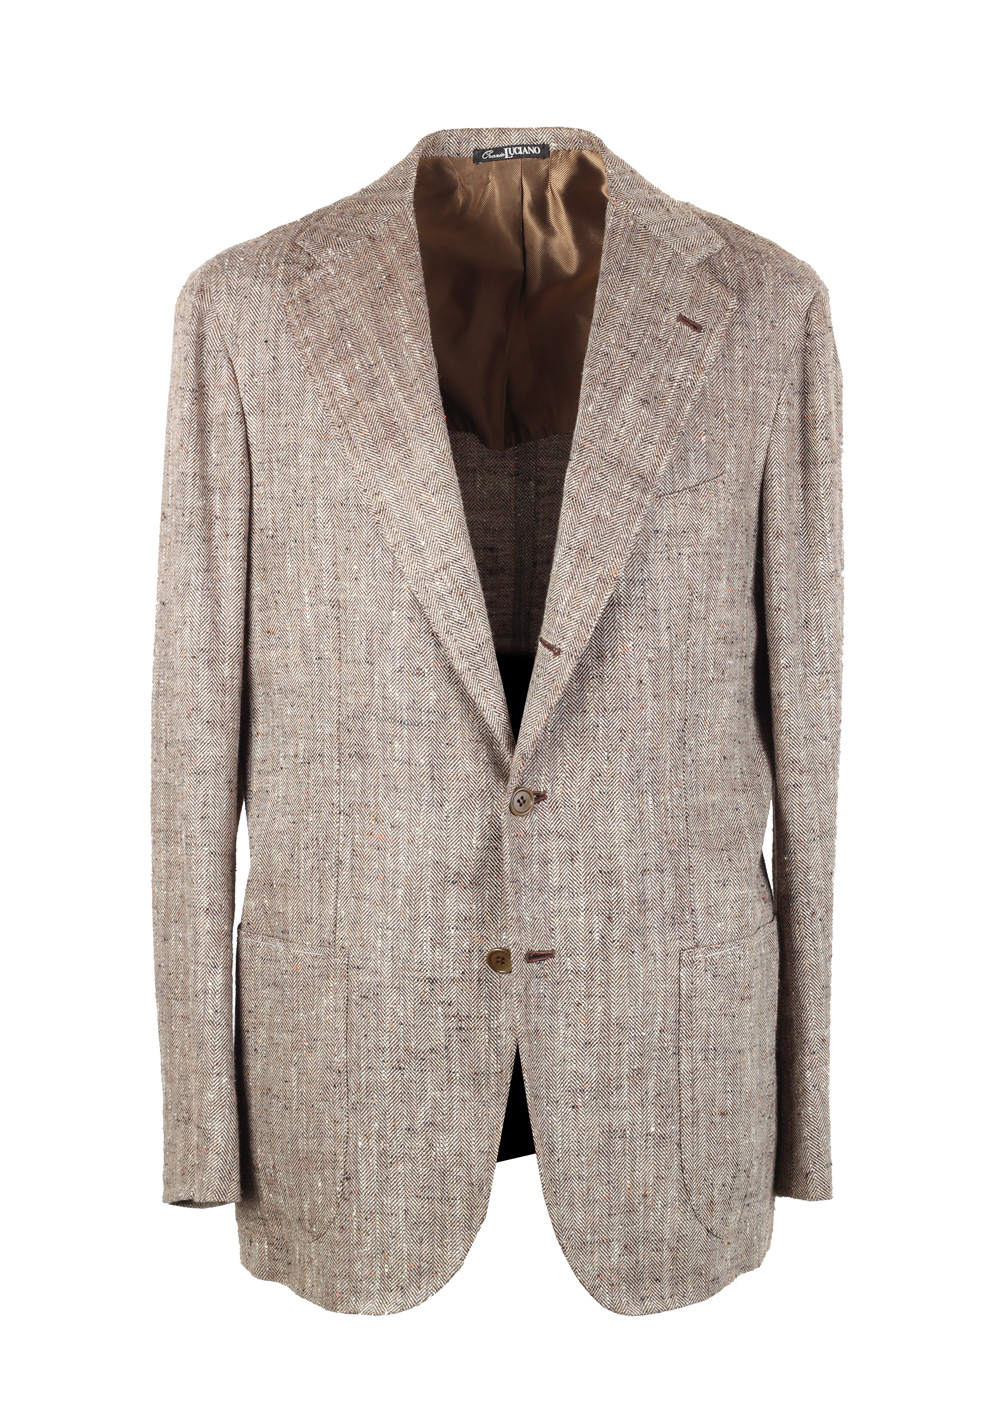 Orazio Luciano Beige Sport Coat Size 50L / 40L U.S. In Linen Silk | Costume Limité